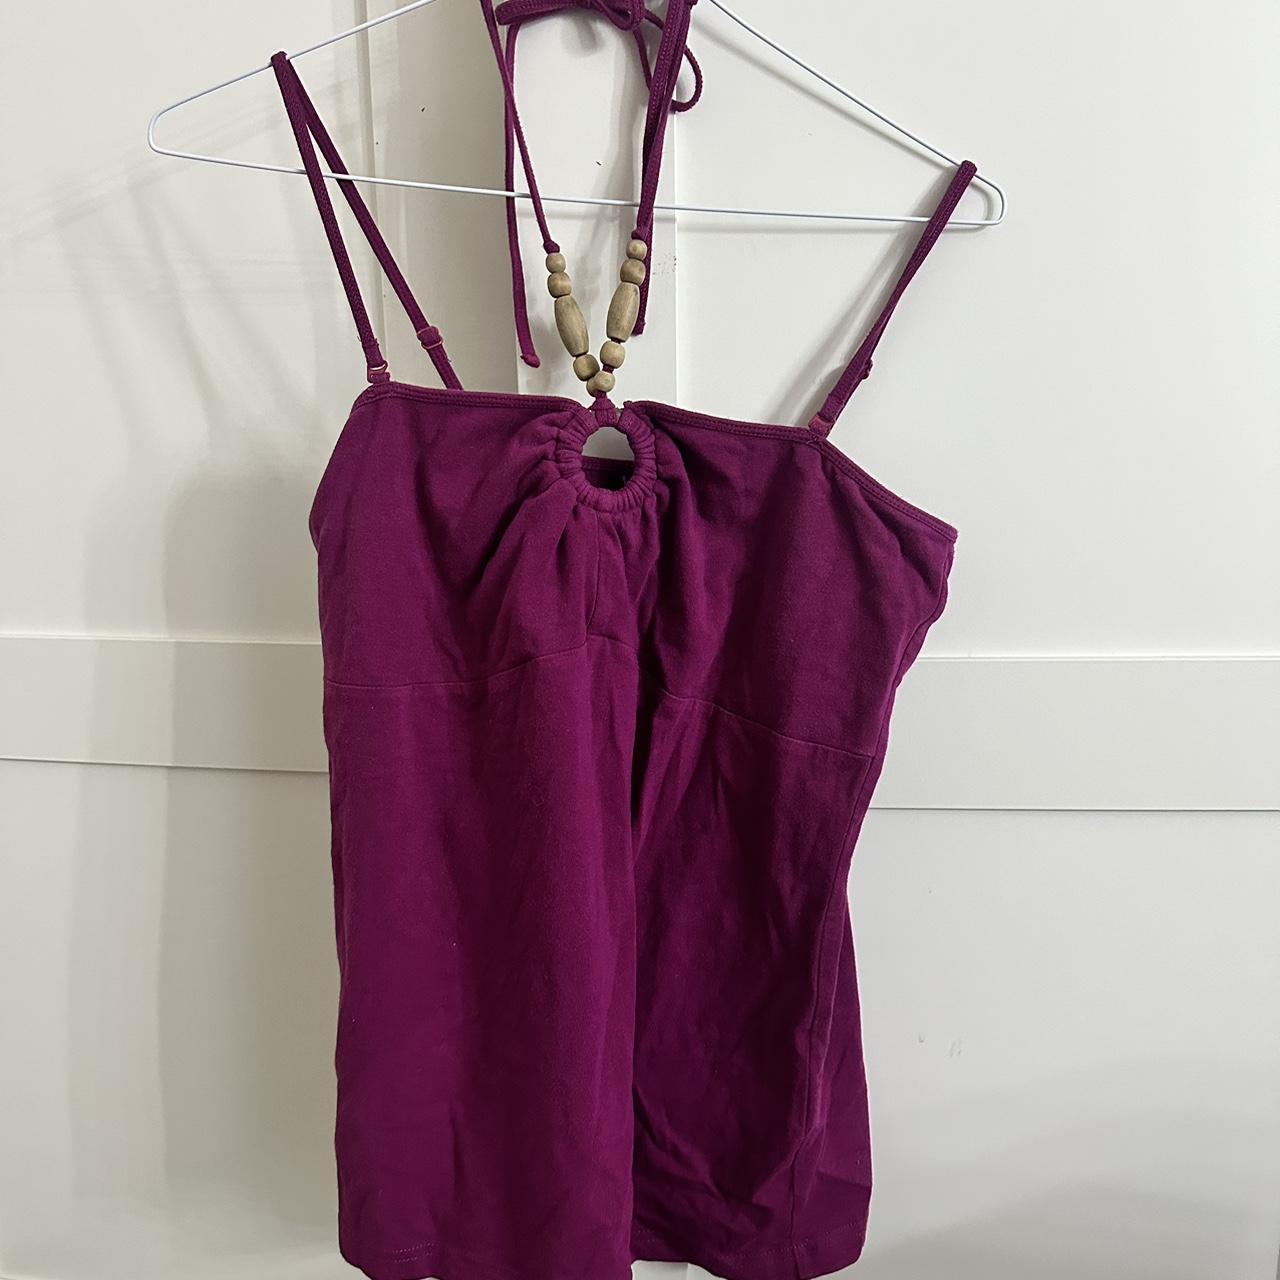 Vintage purple halter neck top Adjustable straps... - Depop